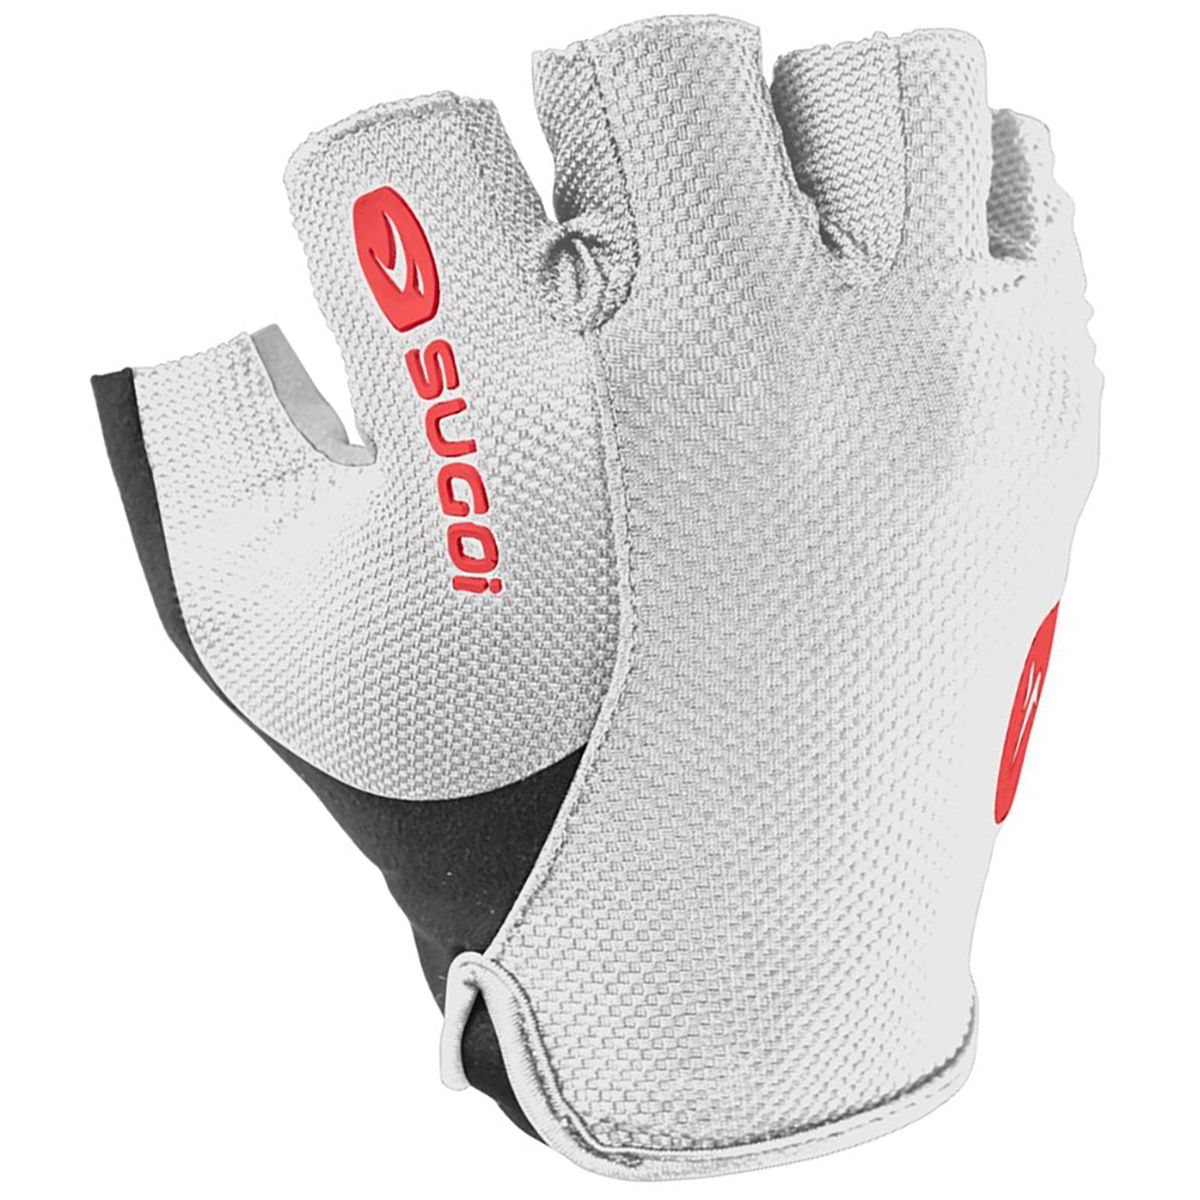 SUGOi RC100 Glove Men's